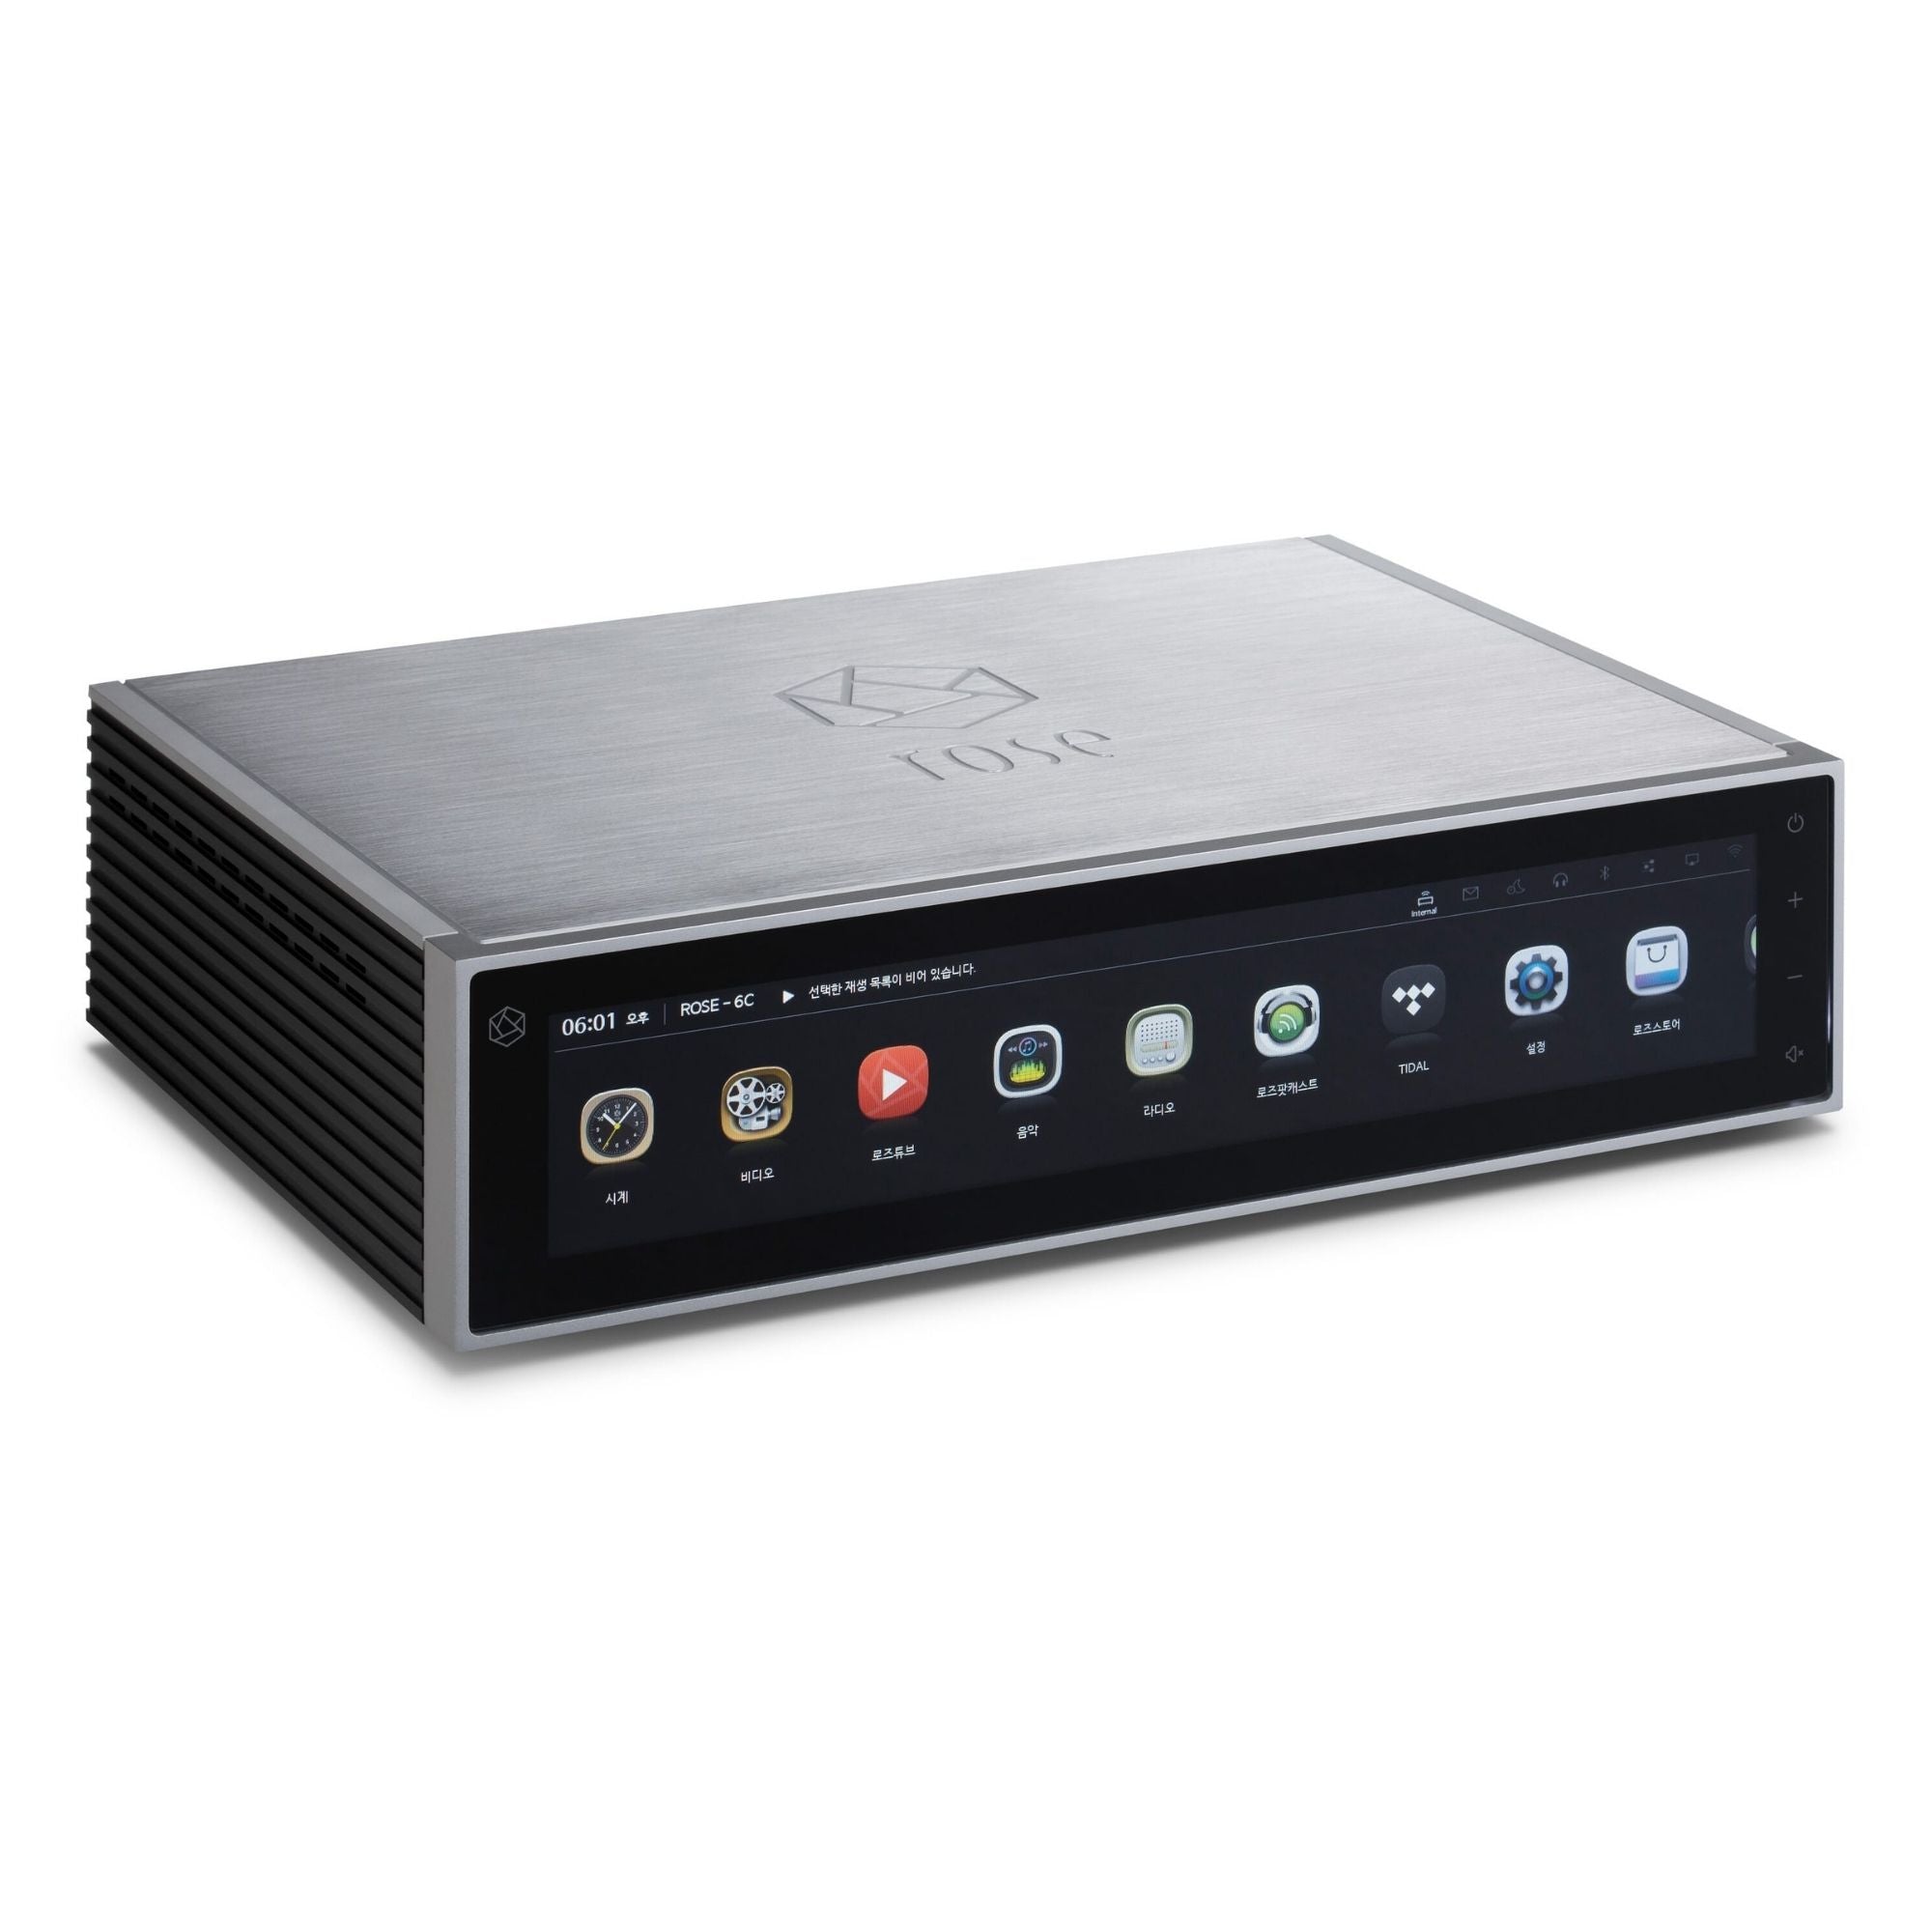 HiFi Rose RS150 - Network Streamer - Black - AVStore